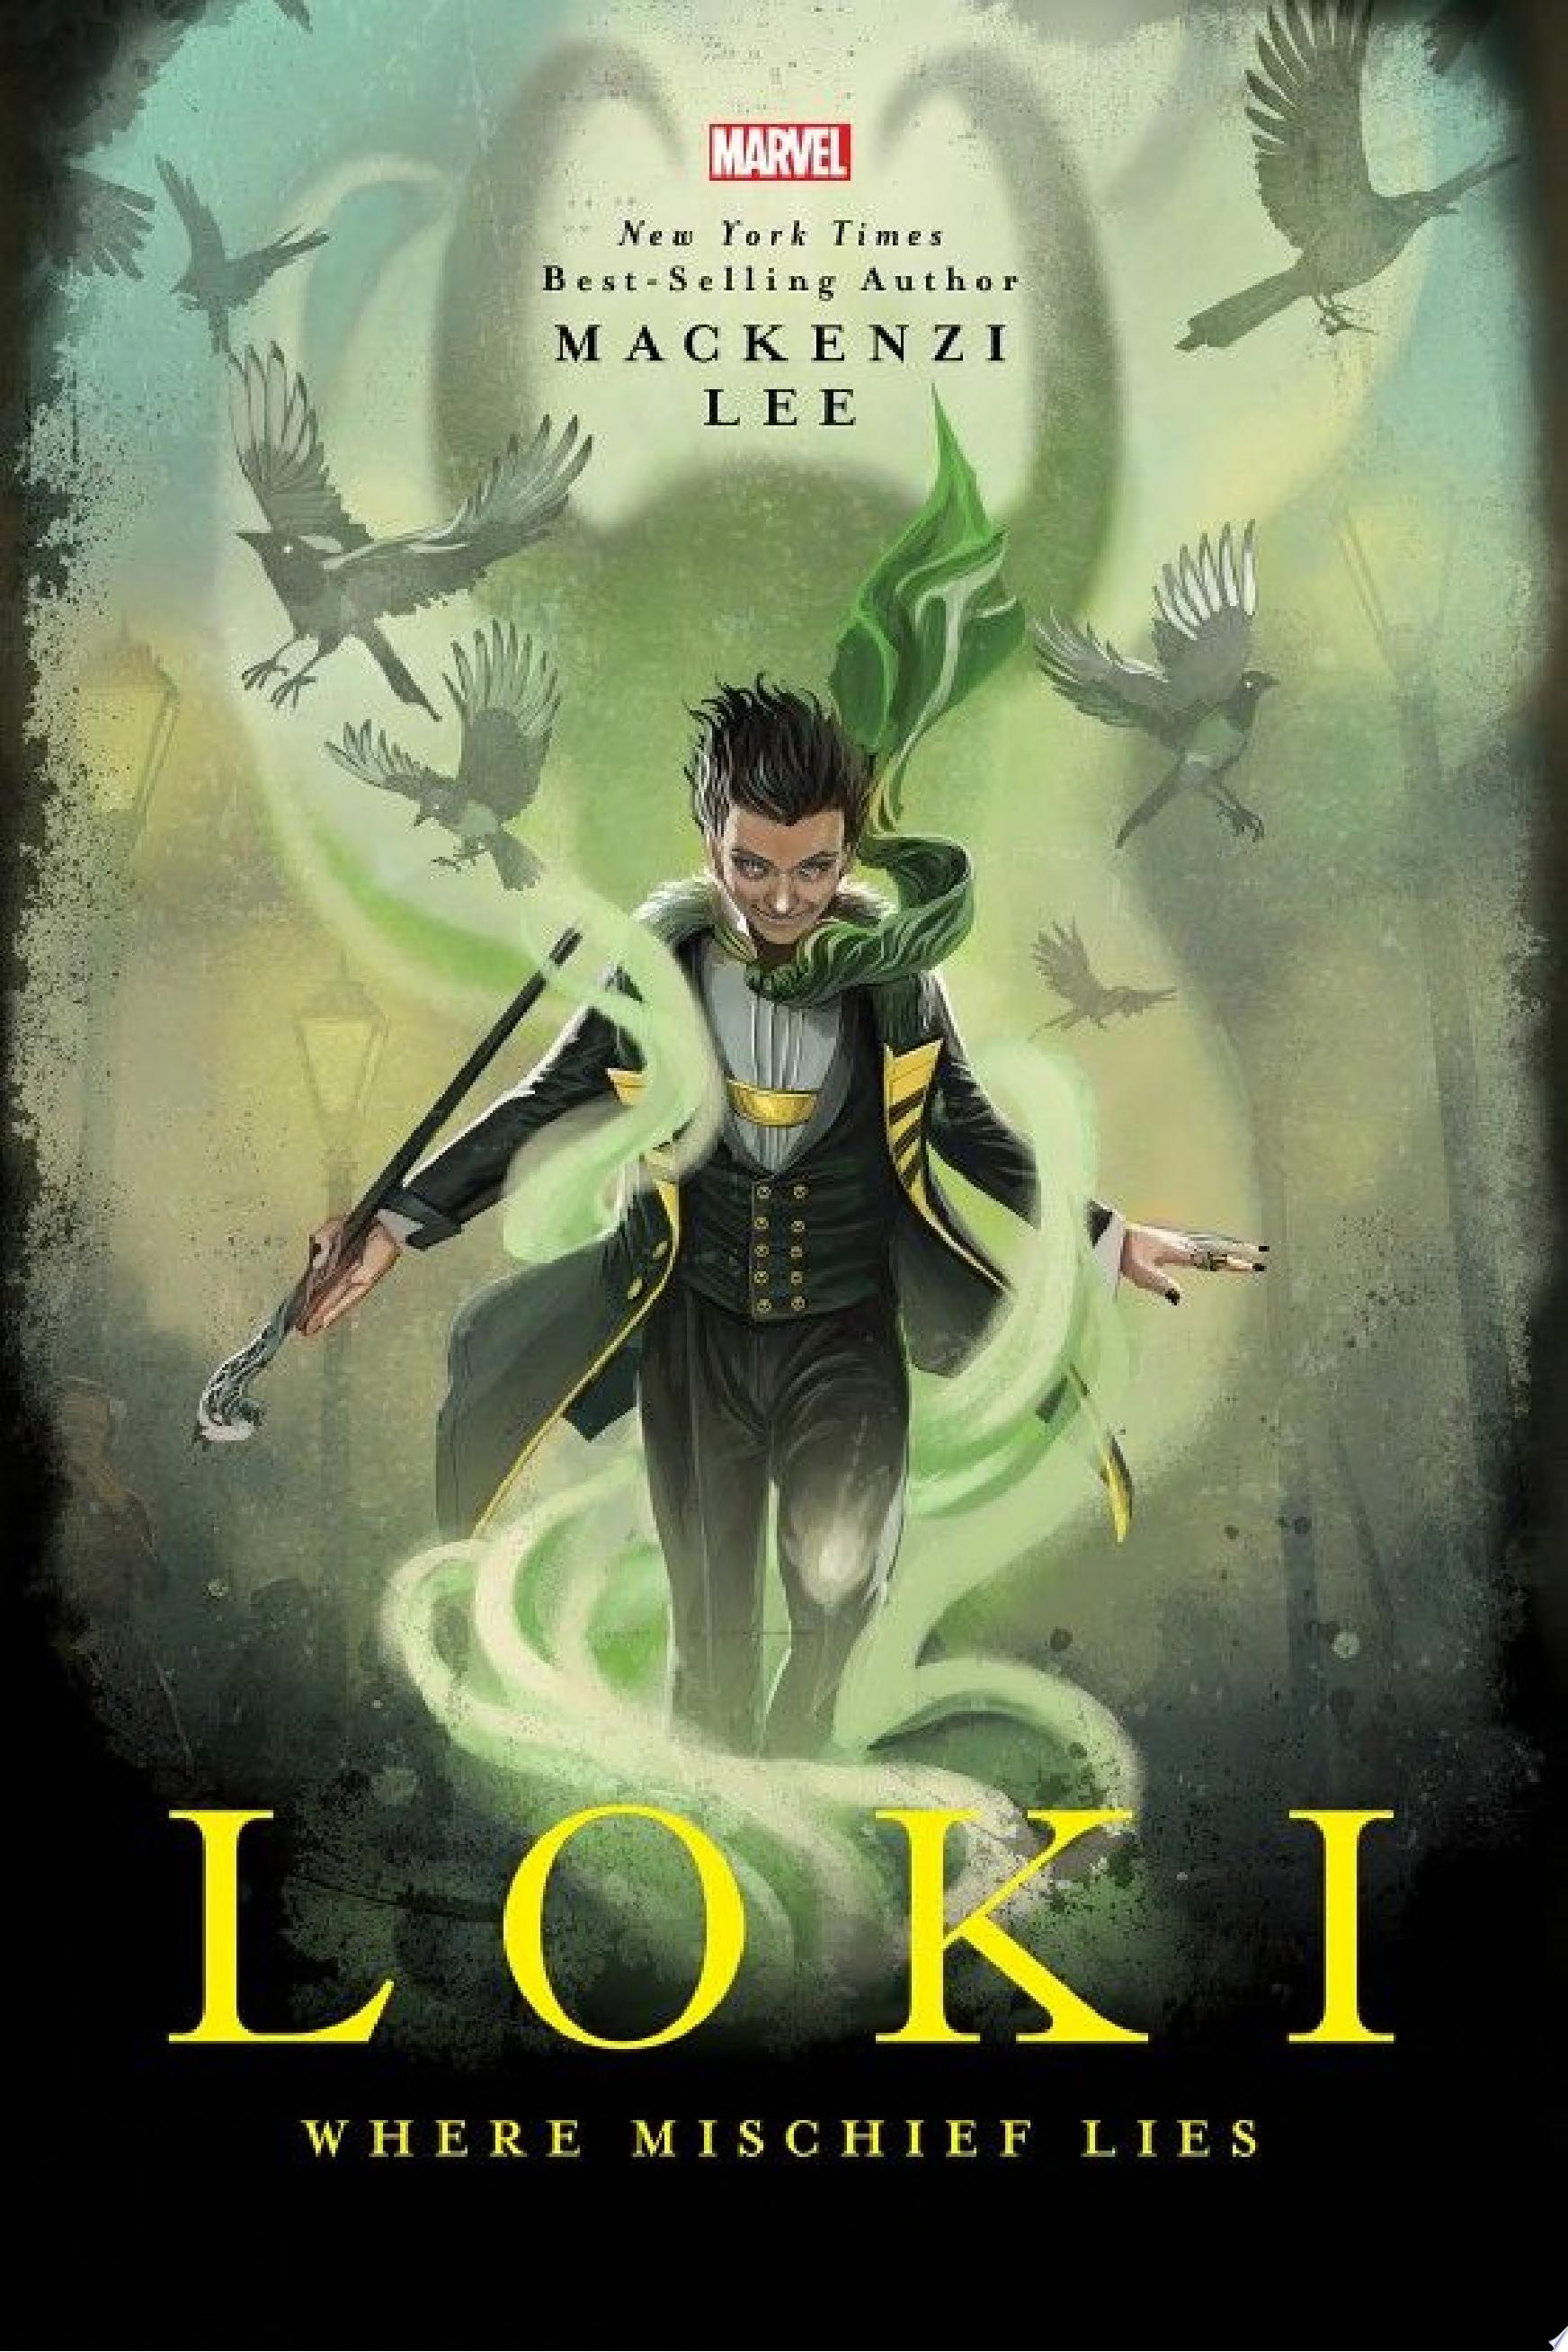 Image for "Loki"